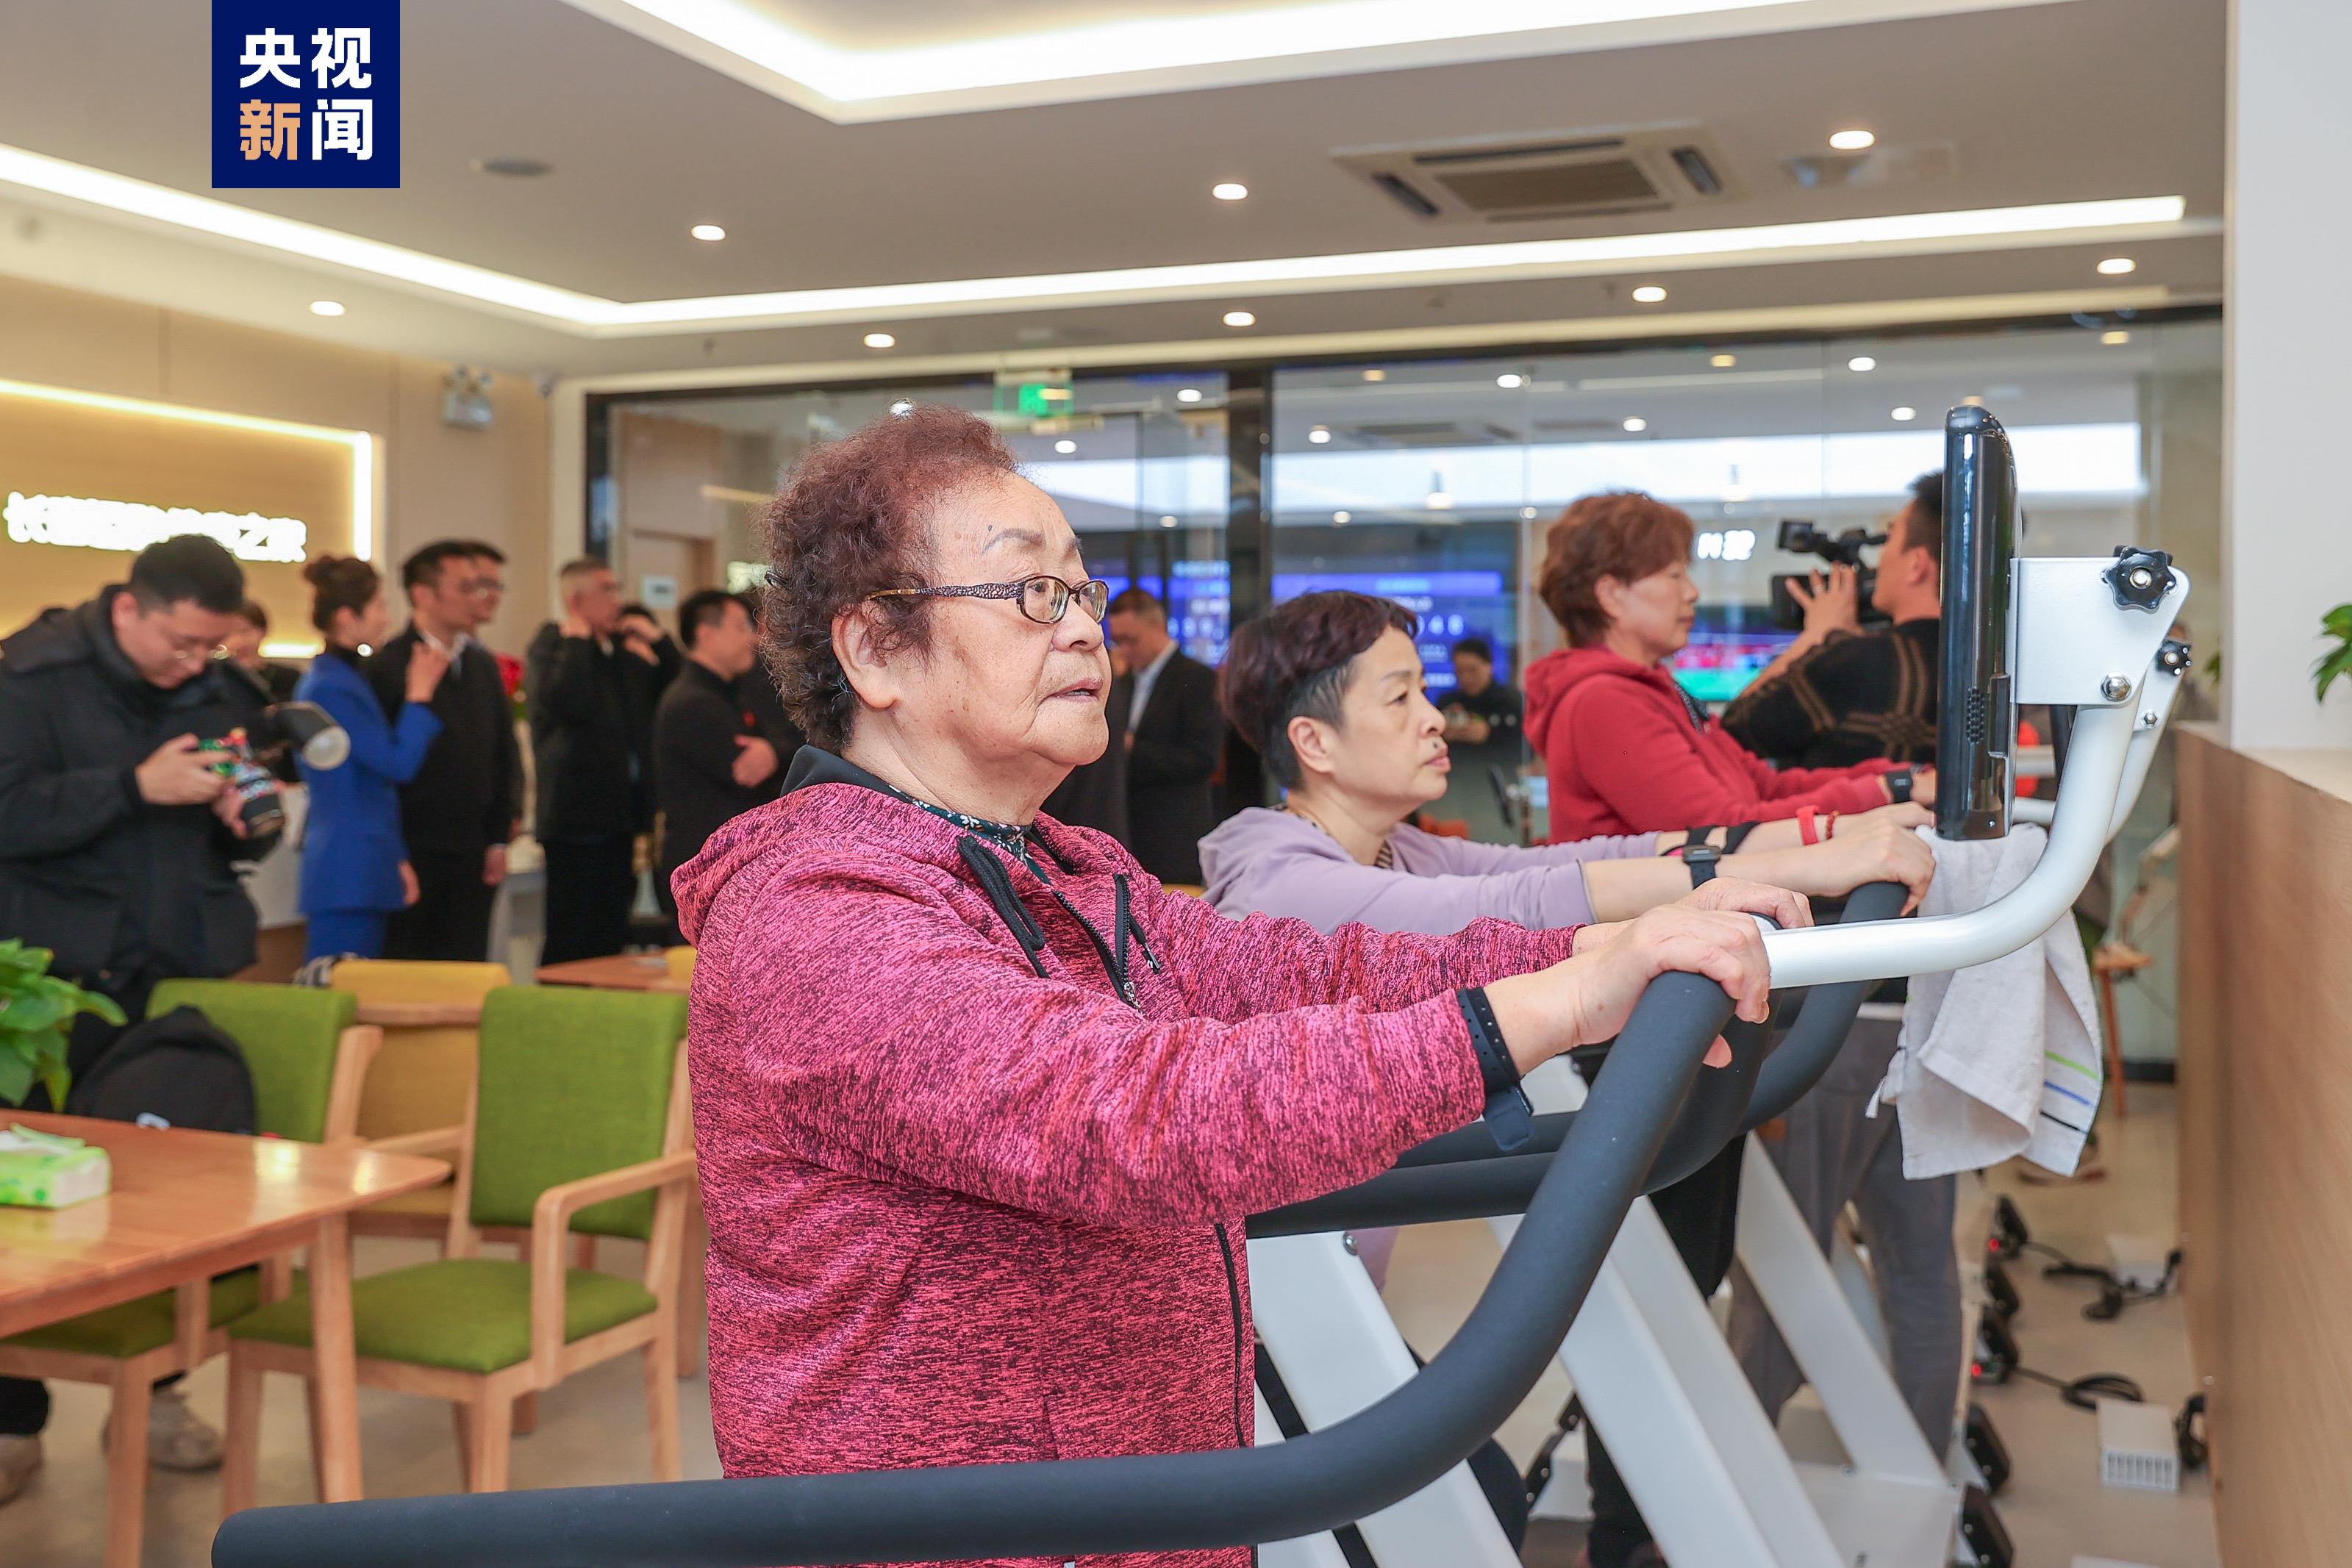 打造15分钟社区生活圈 全国首批社区运动健康中心在上海启用